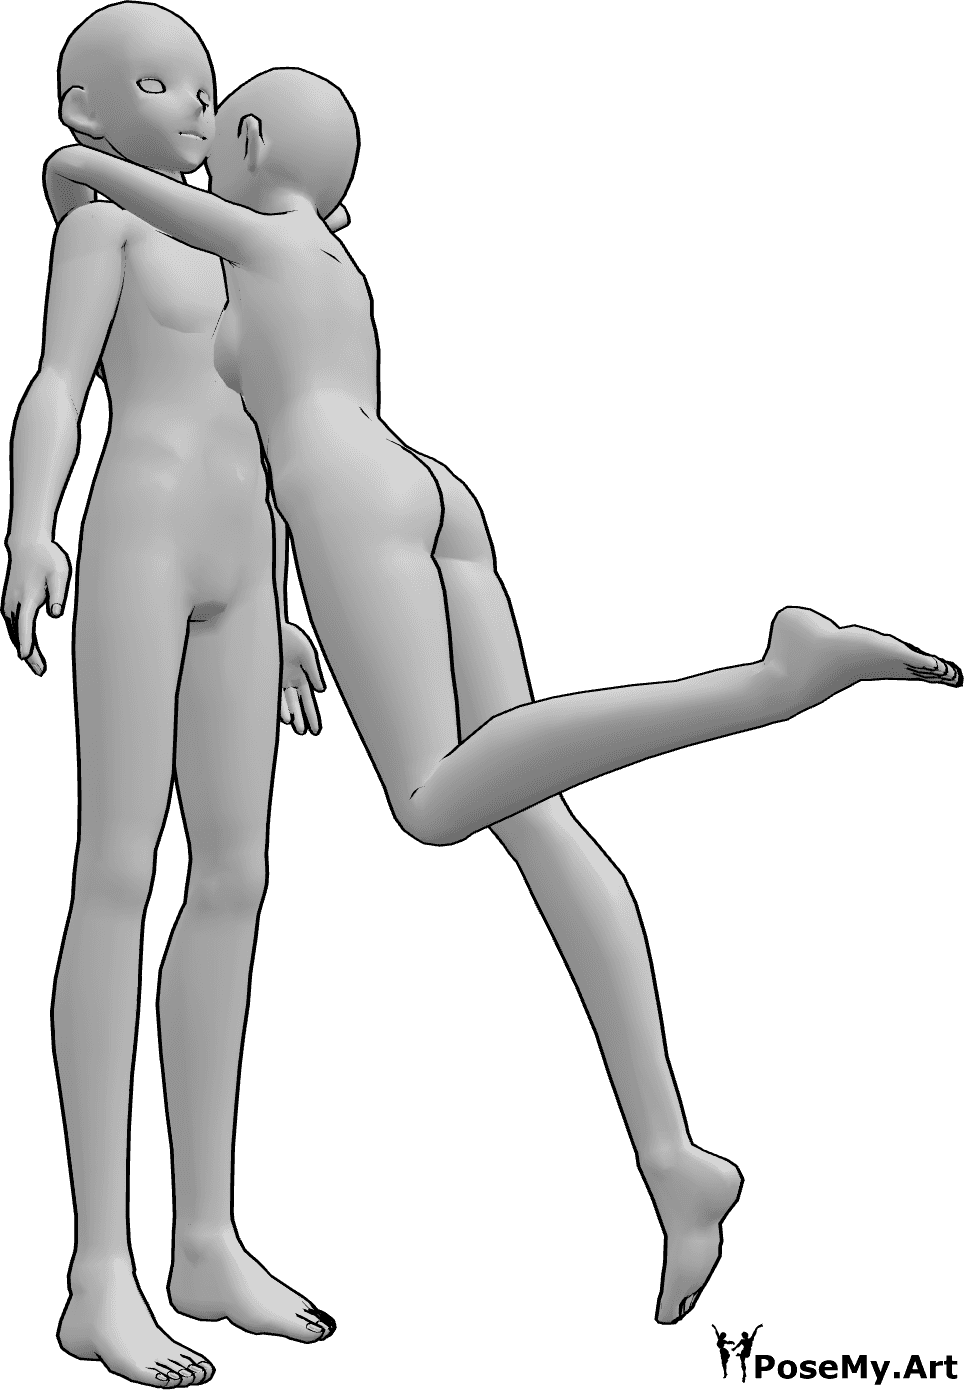 Posen-Referenz- Anime Überraschung umarmt Pose - Anime weiblich springt und umarmt das Männchen, Anime Überraschung umarmen Pose